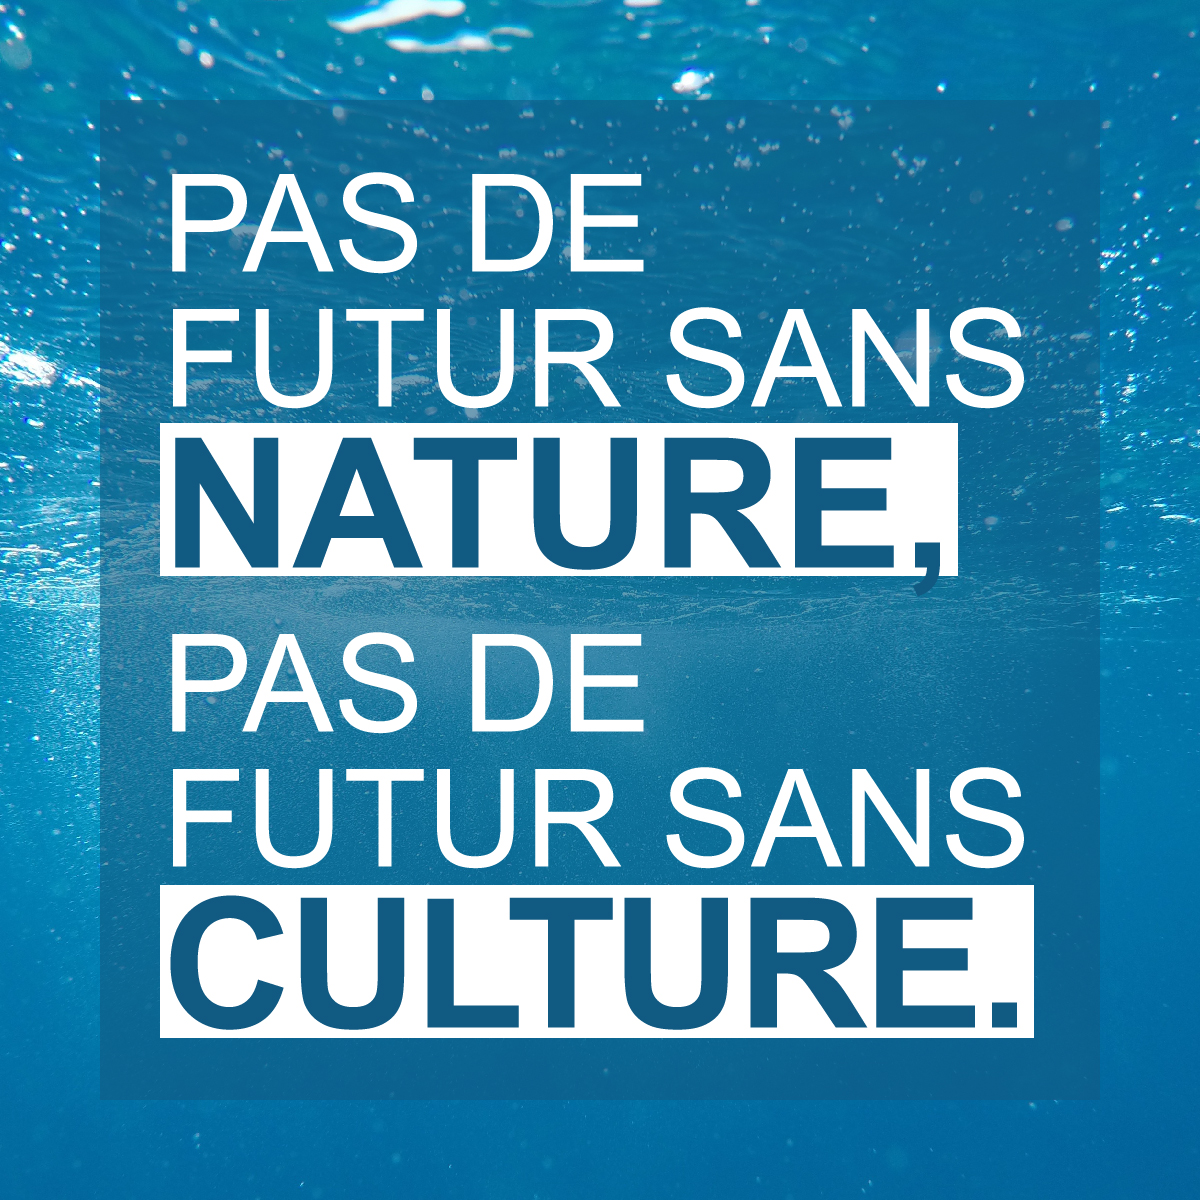 Pas de futur sans nature, pas de futur sans culture